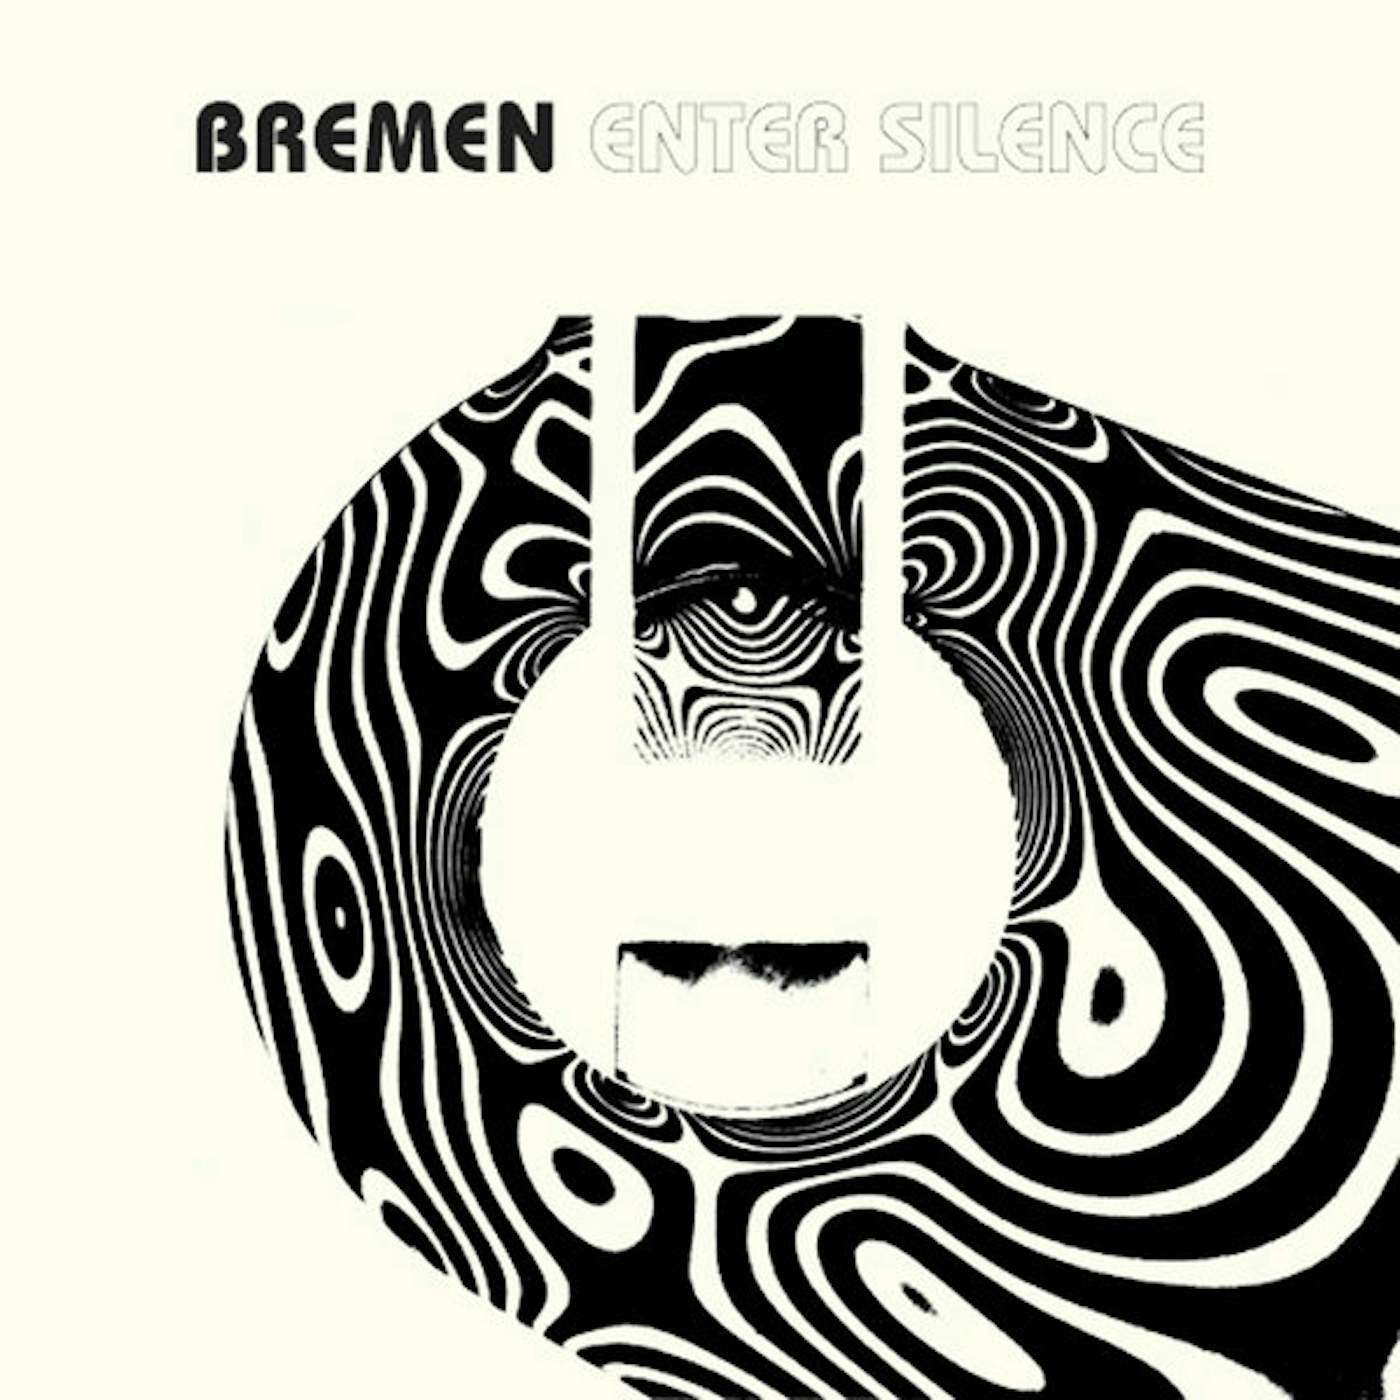 Bremen Enter Silence Vinyl Record